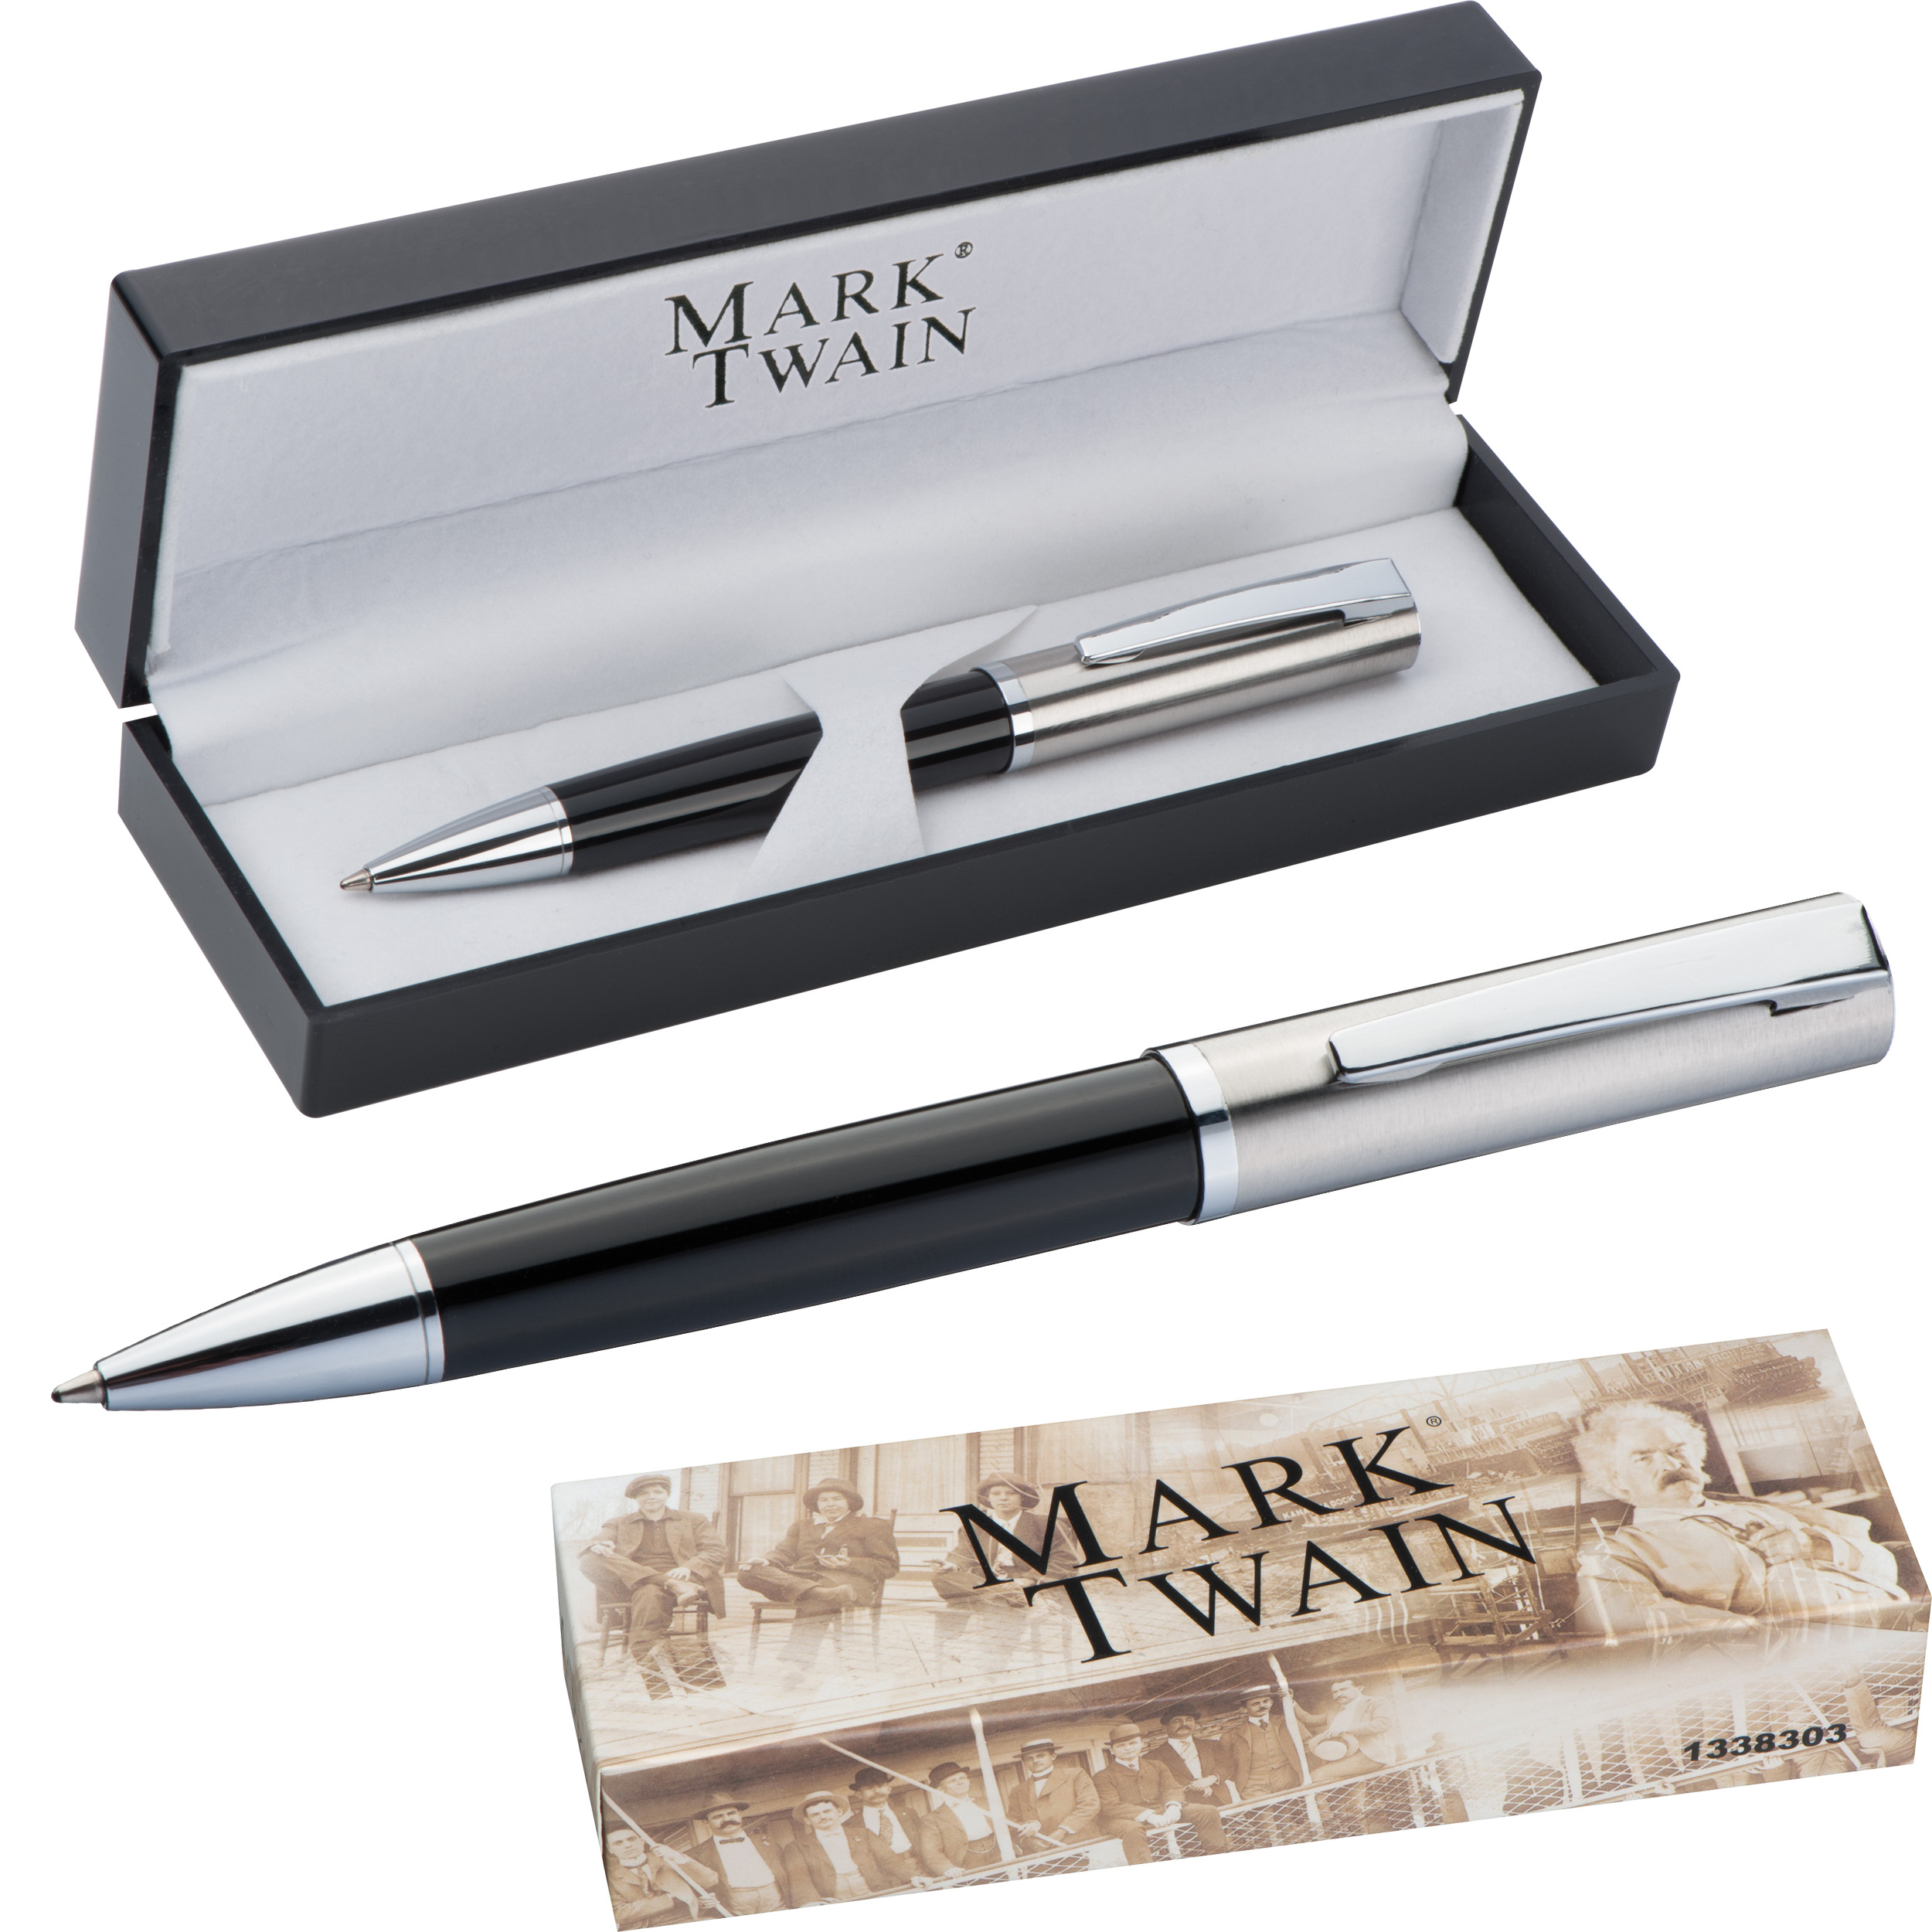 Mark Twain ball pen acrylic box